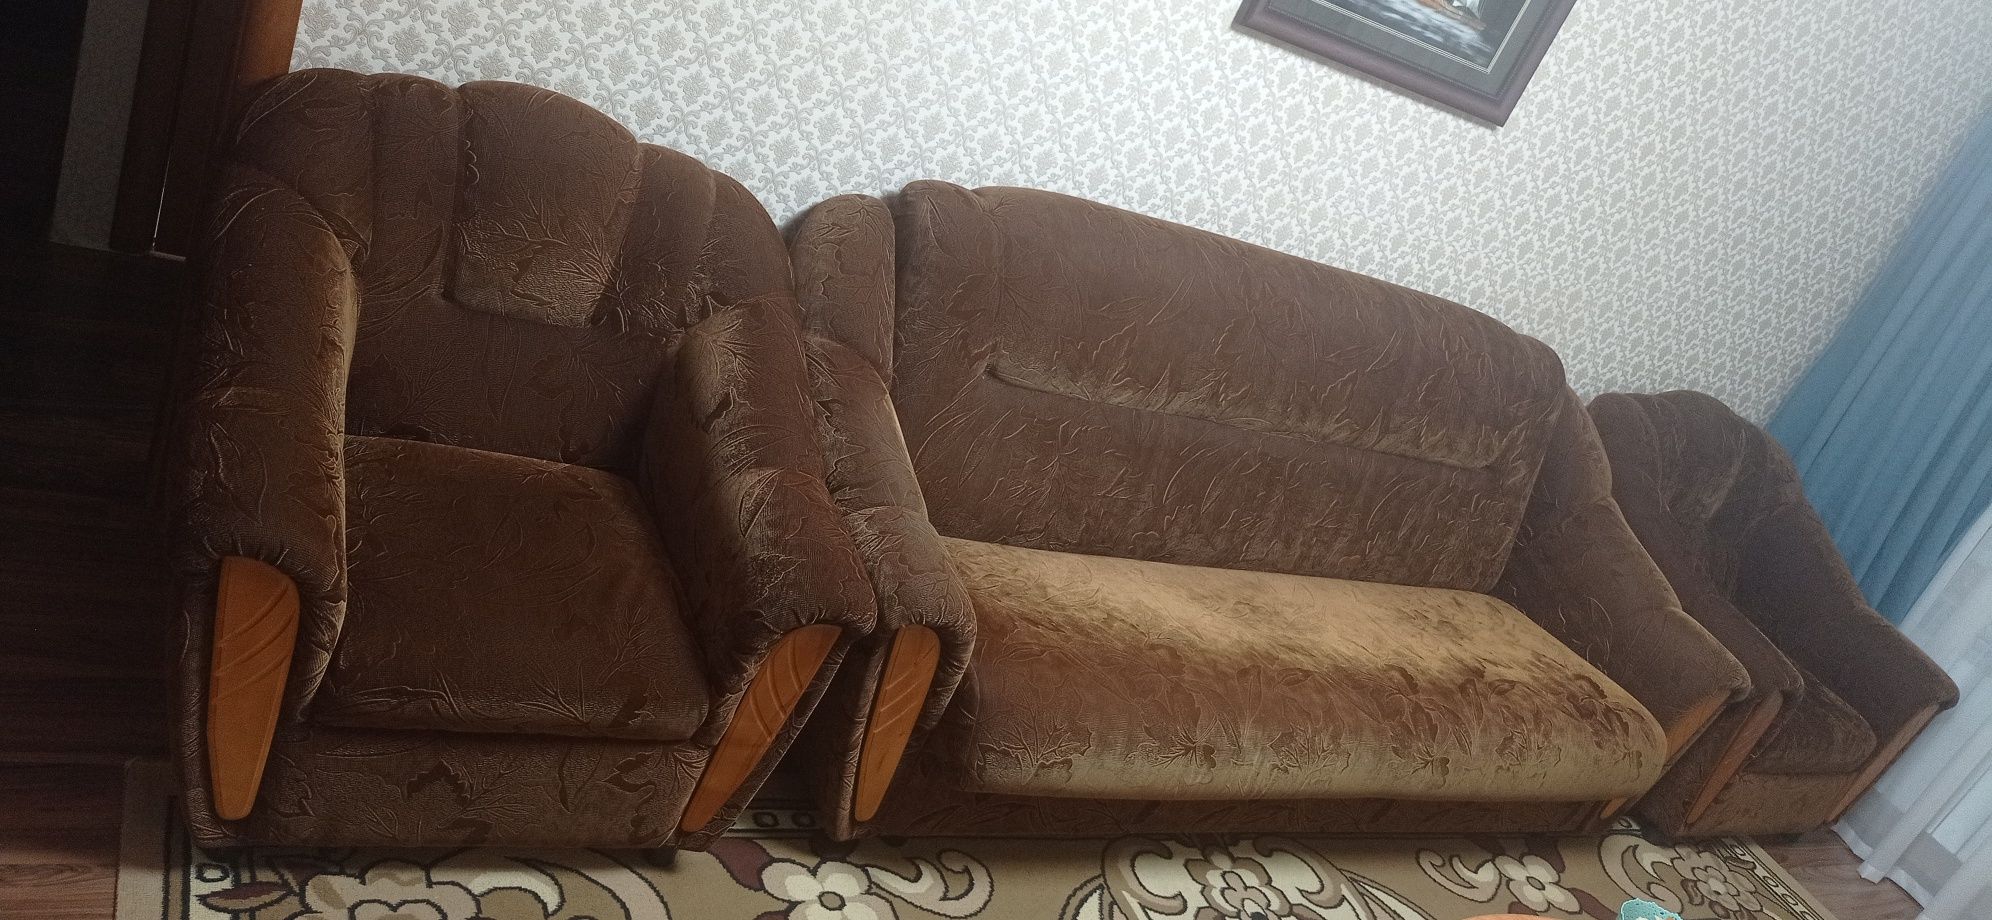 Продам диван с креслами б/у срочно